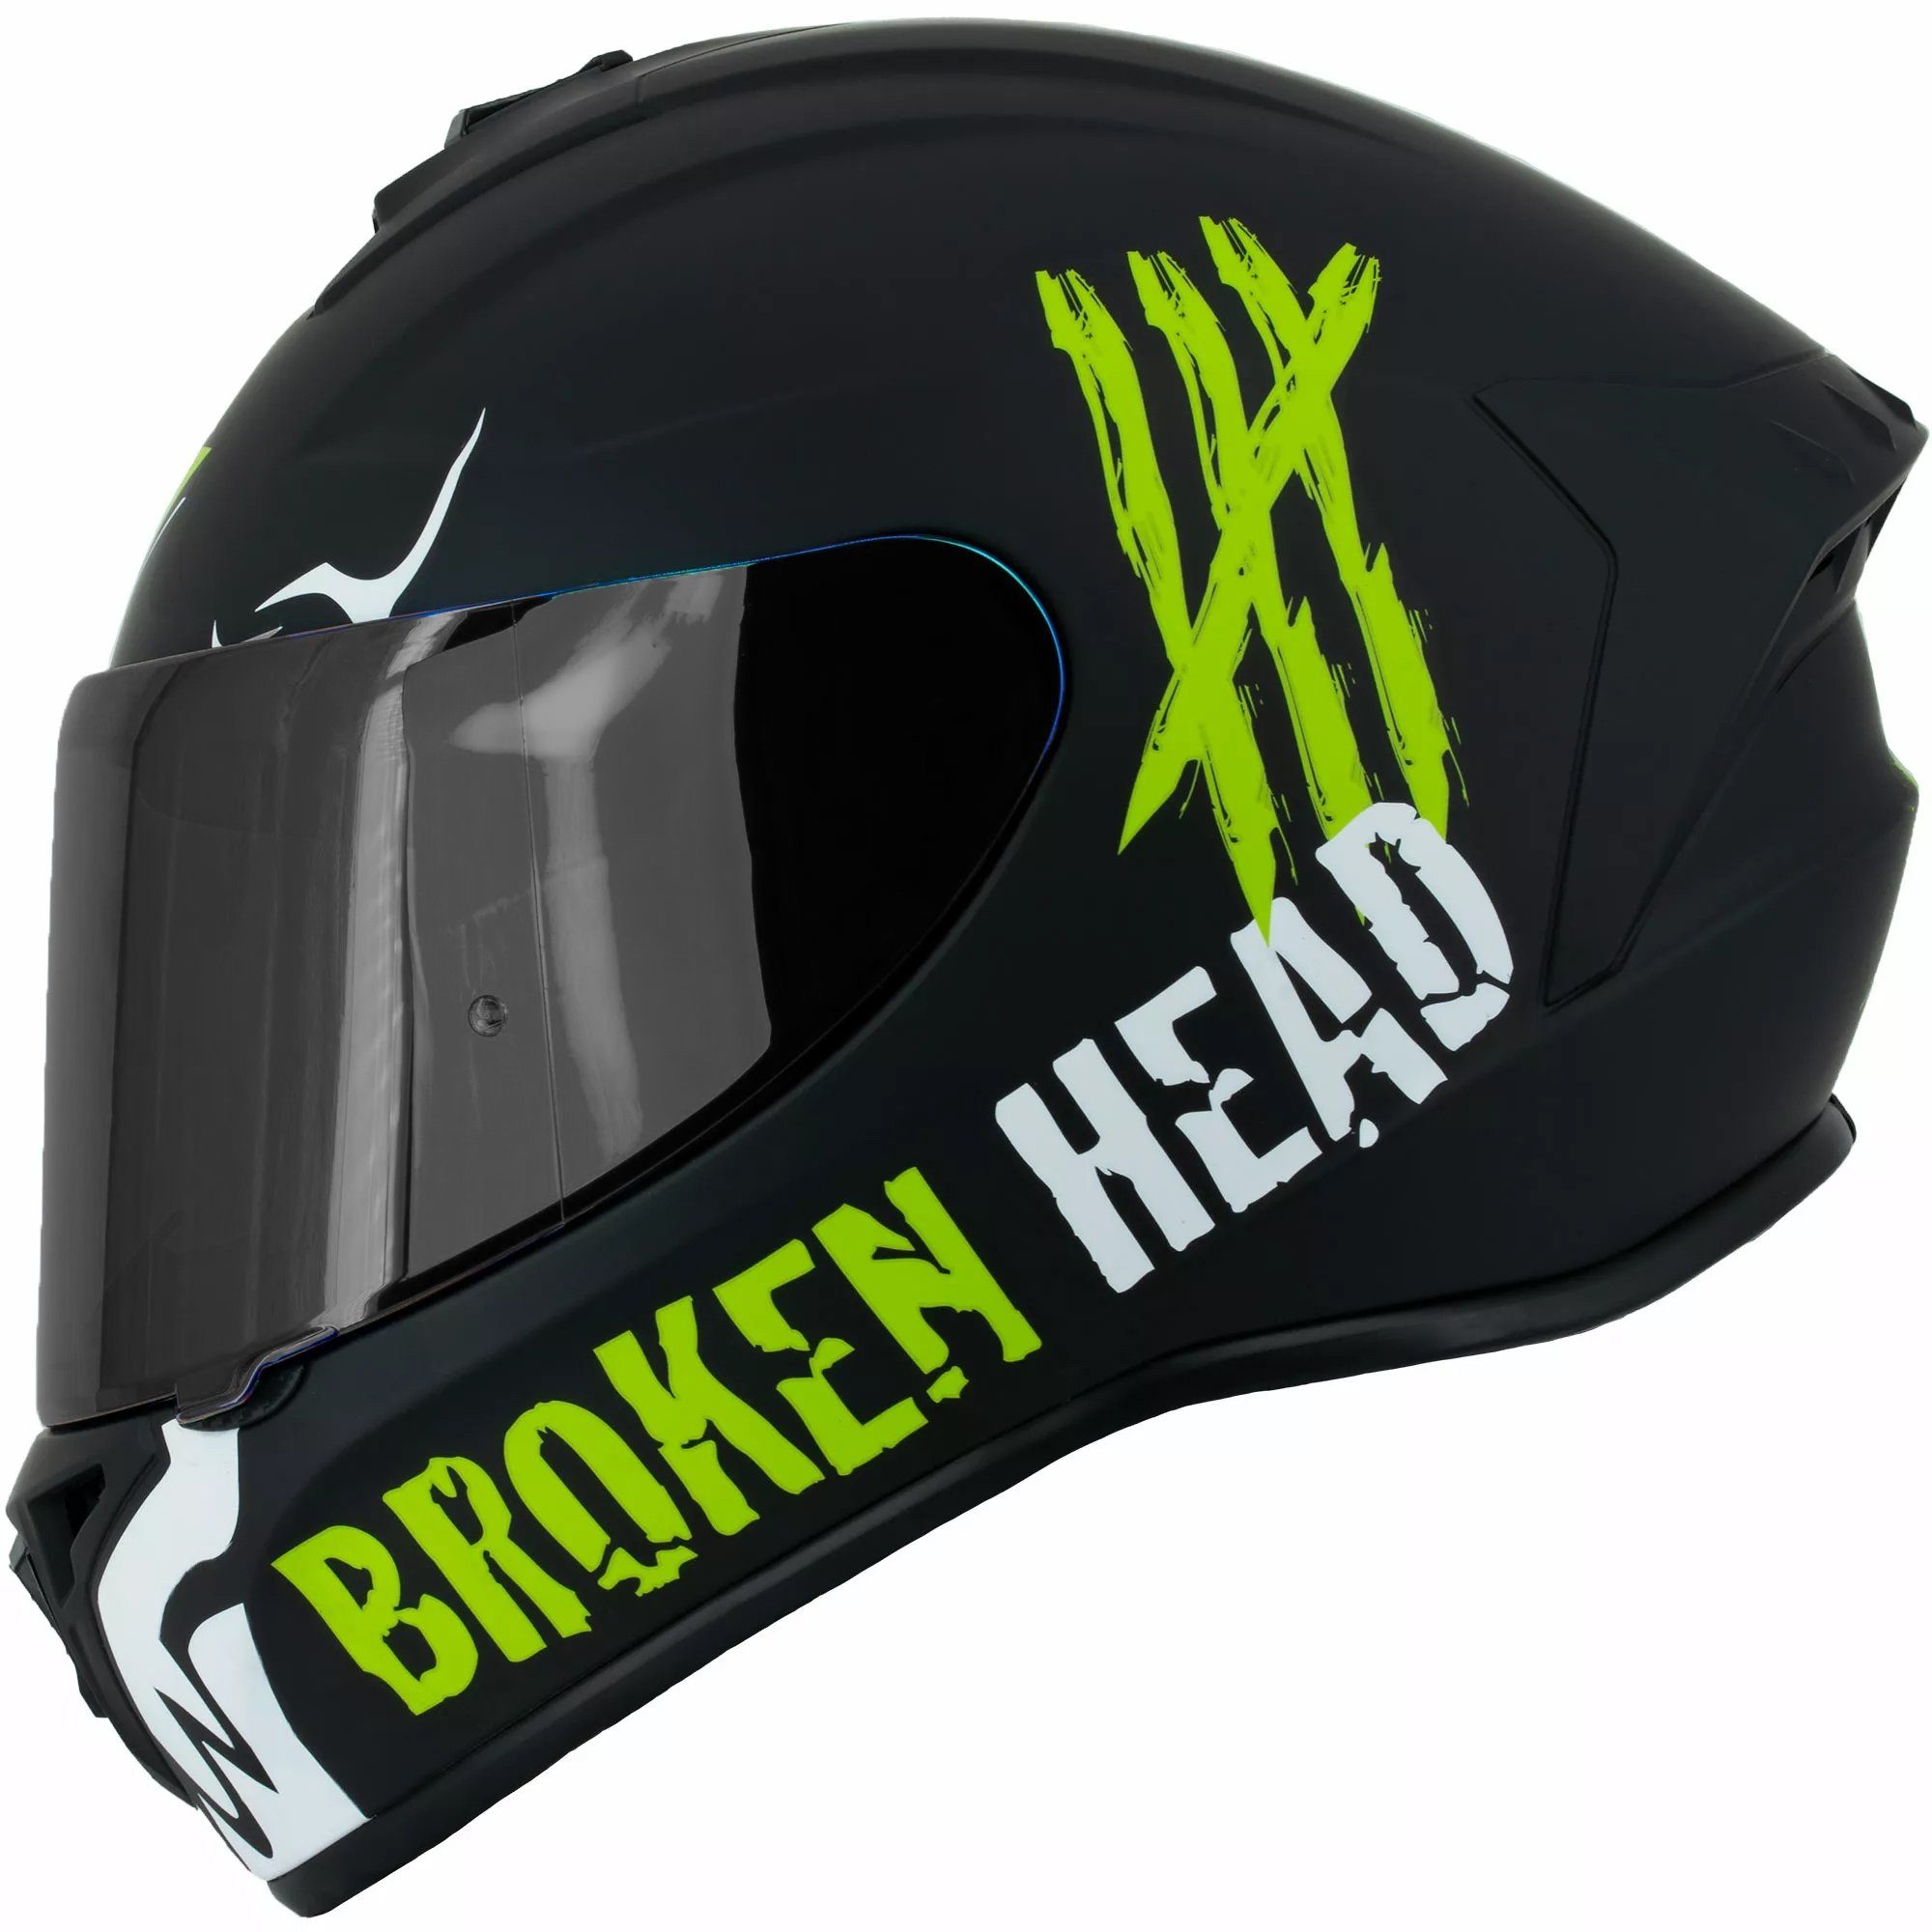 Broken Head Motorradhelm Adrenalin Therapy 4X Schwarz-Weiß + schwarzes Visier (Mit schwarzem Visier), Look für Adrenalin-Junkies